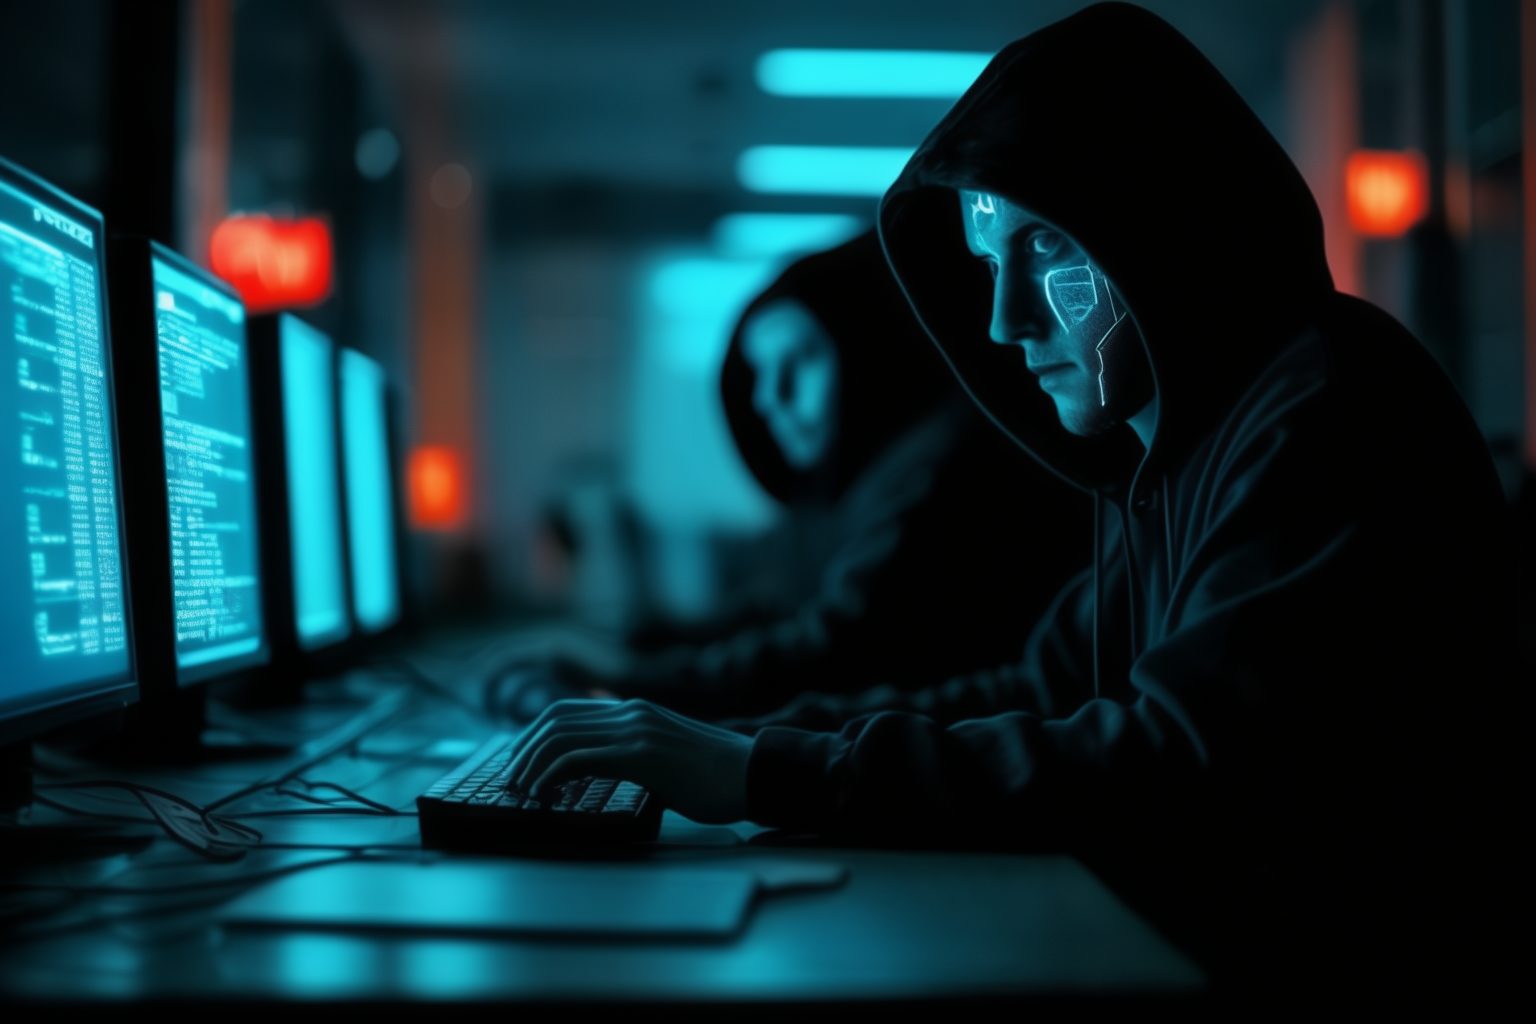 Ключевой игрок здравоохранения США признал оплату выкупа хакерам